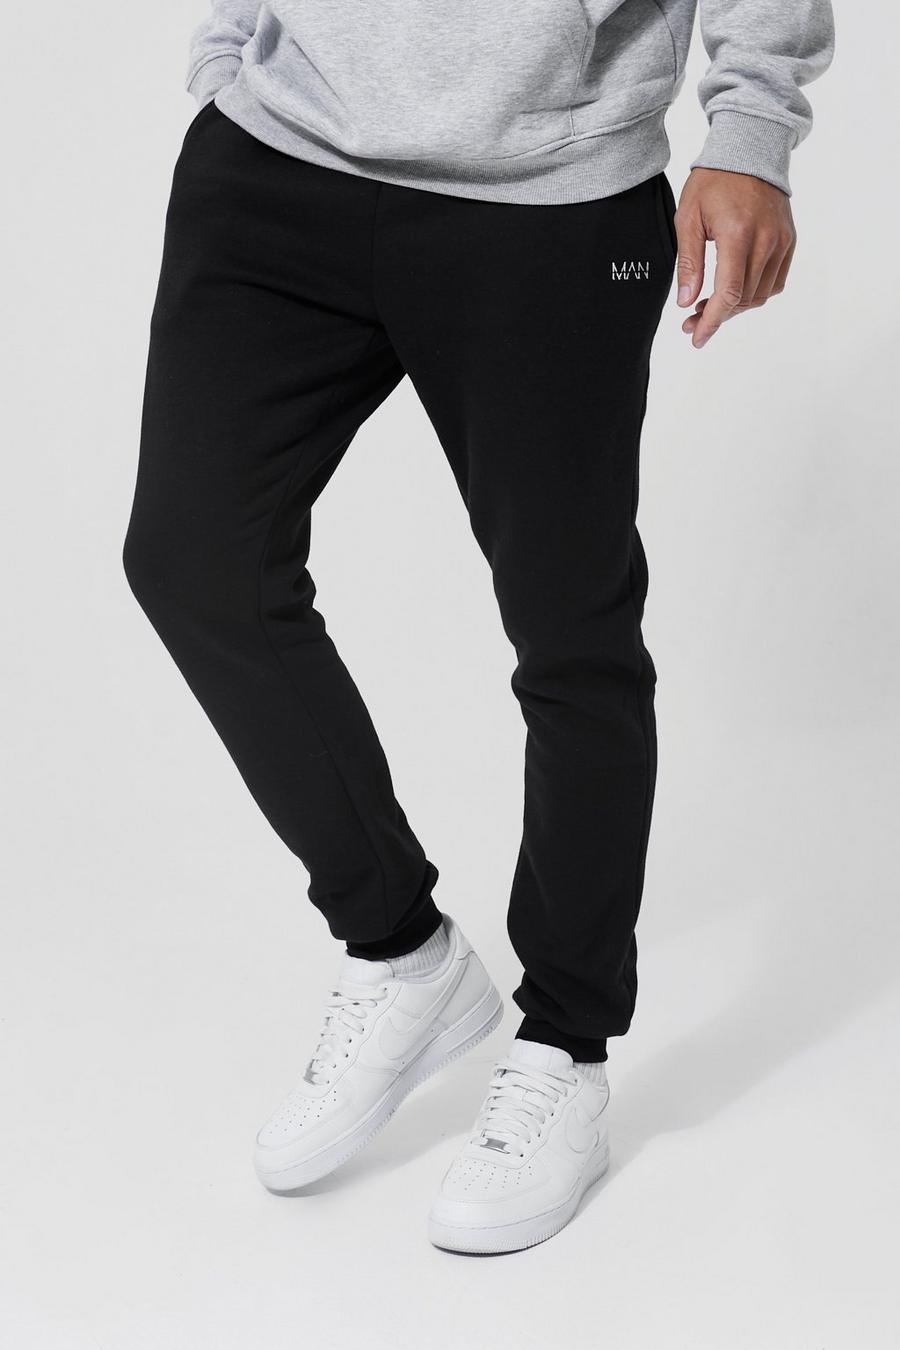 Pantalón deportivo Tall básico pitillo con letras MAN, Black negro